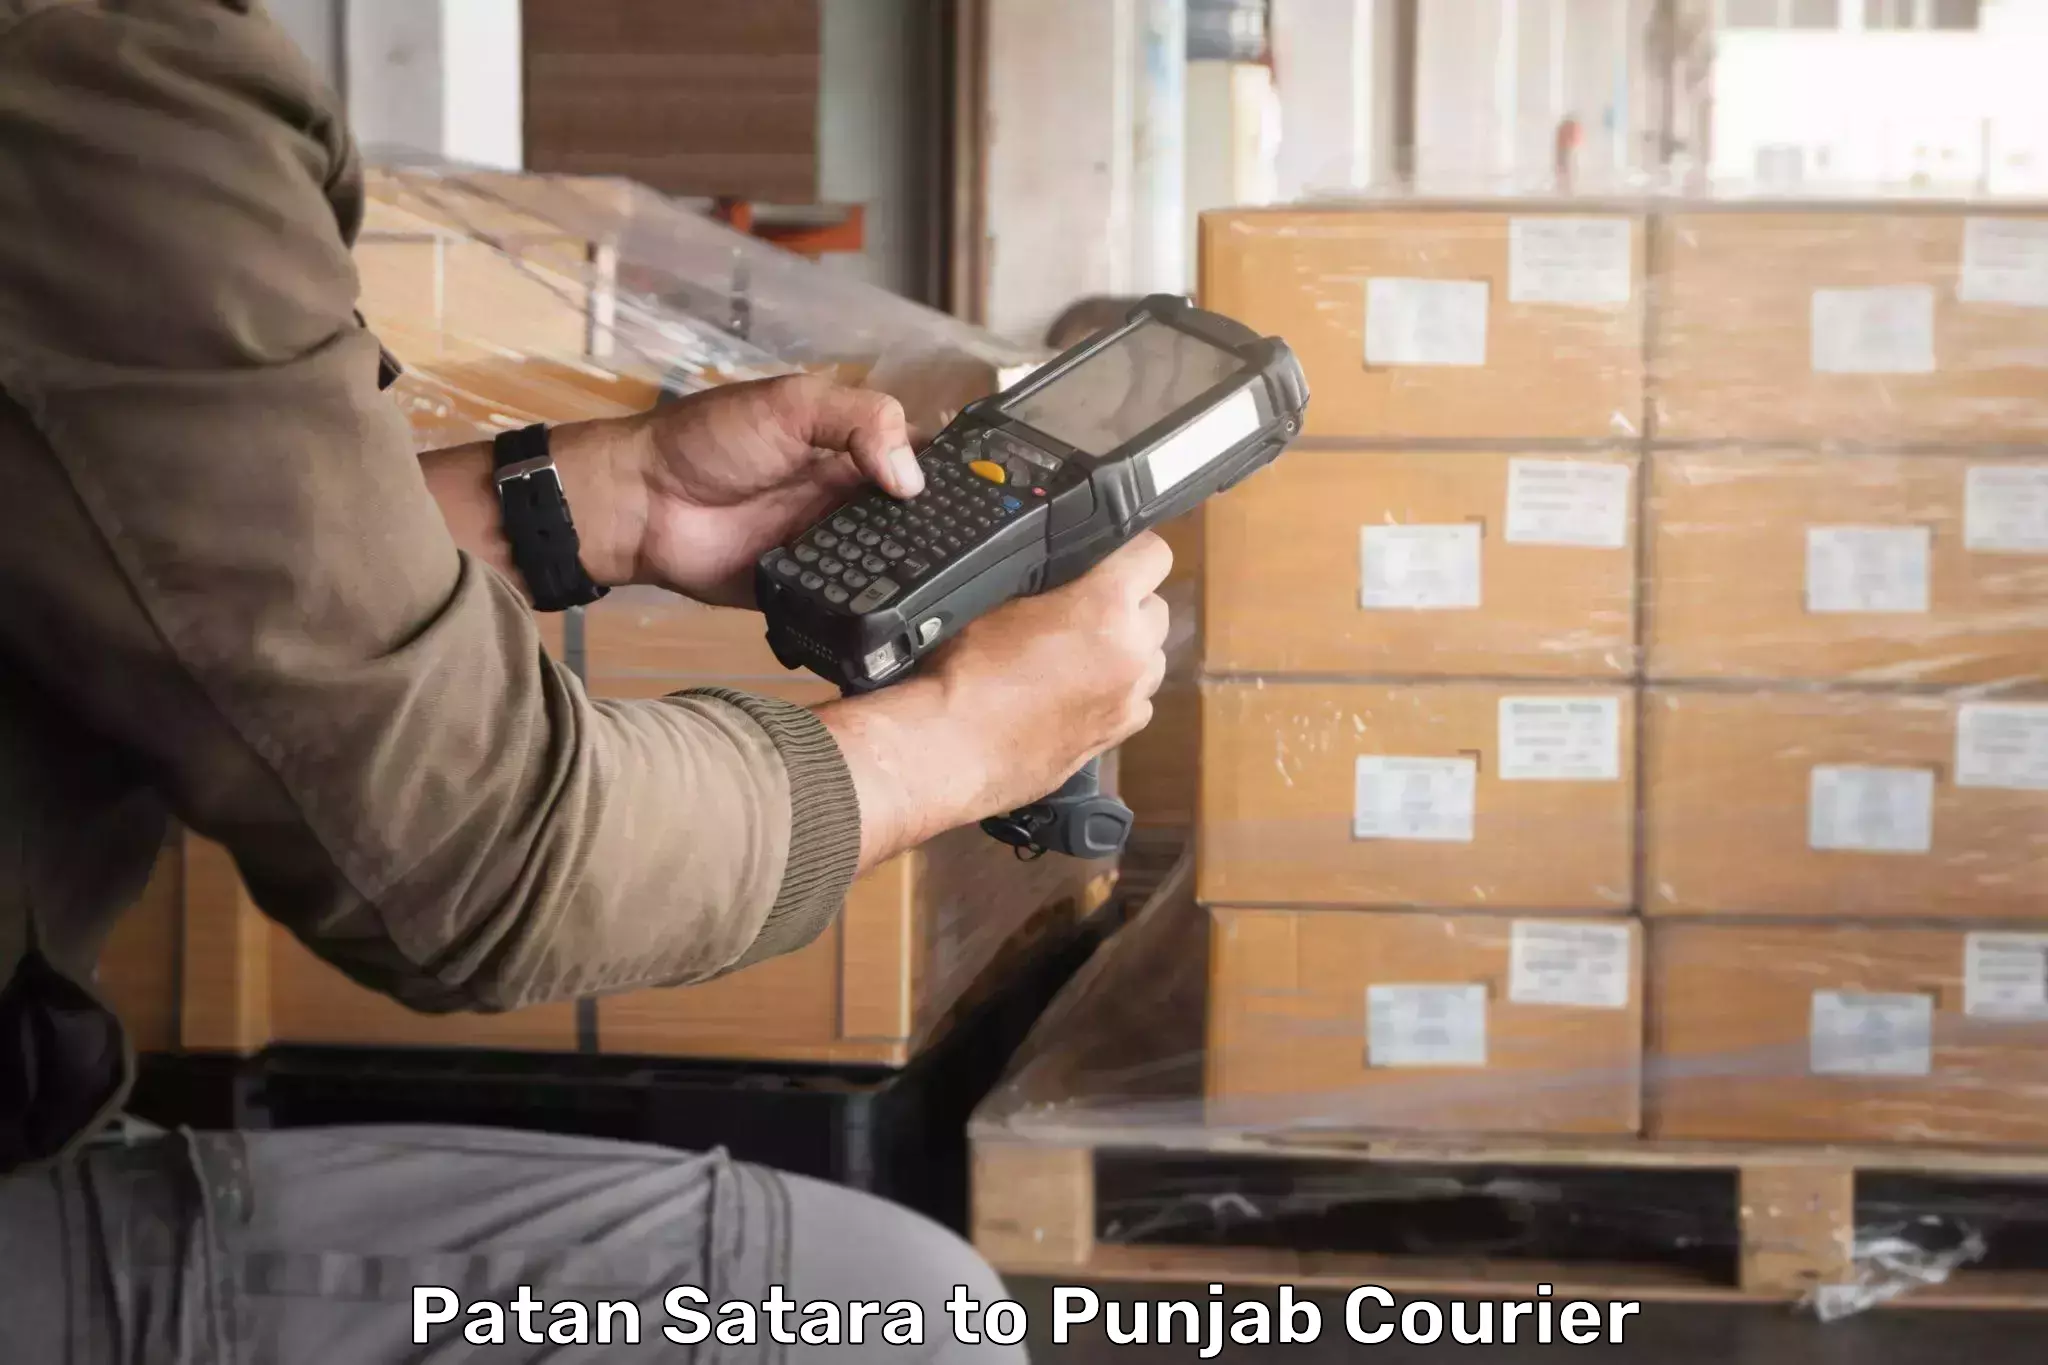 Advanced shipping network Patan Satara to Rupnagar